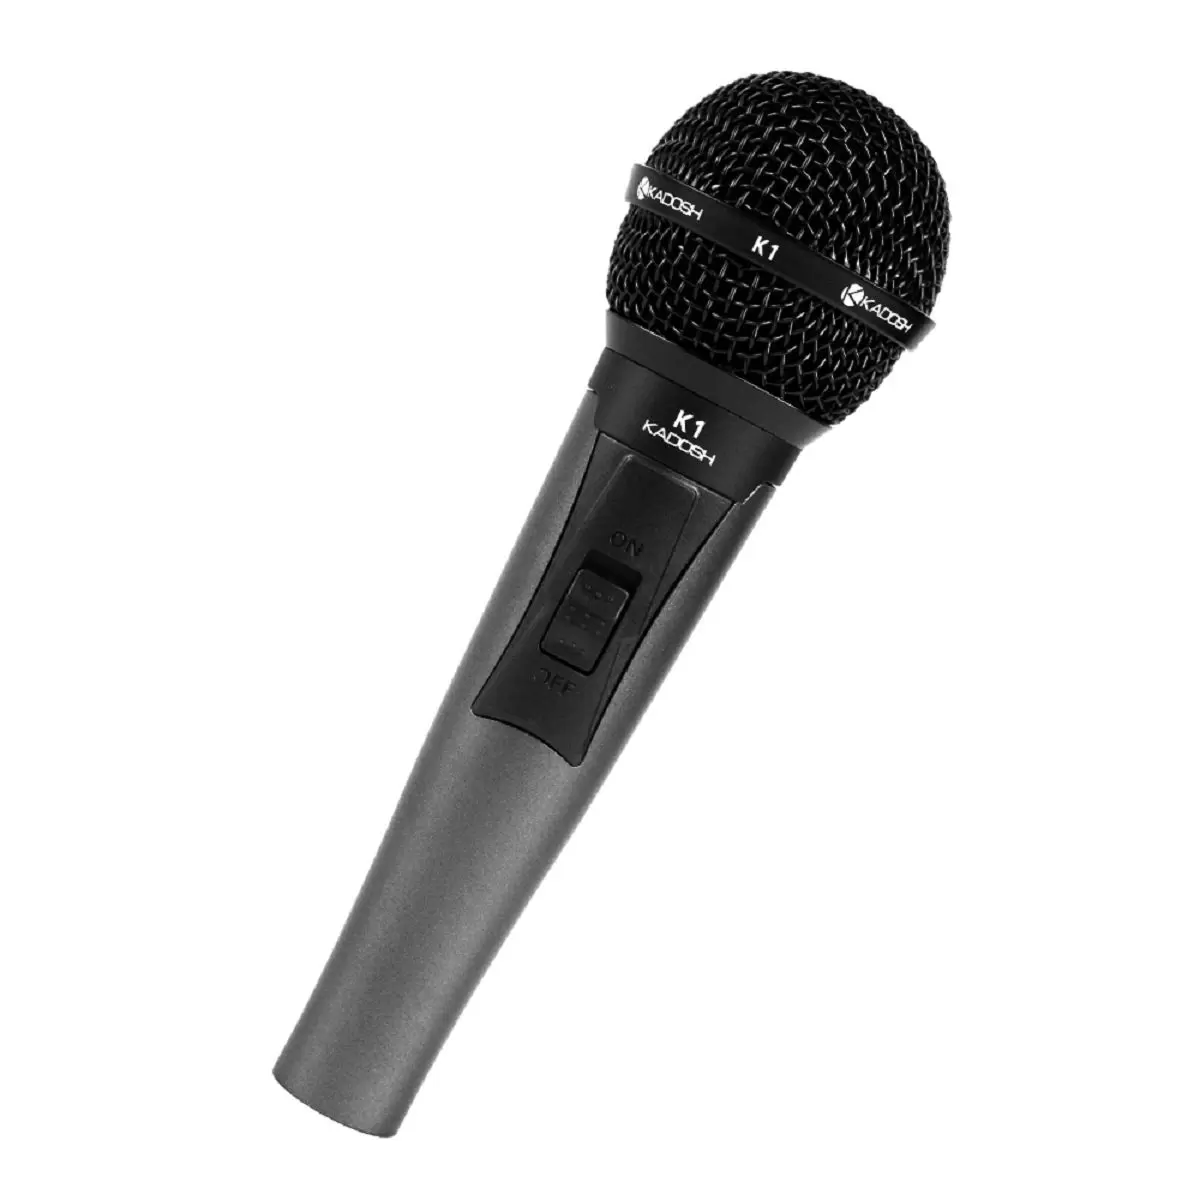 Microfone Kadosh com cachimbo e bag K1